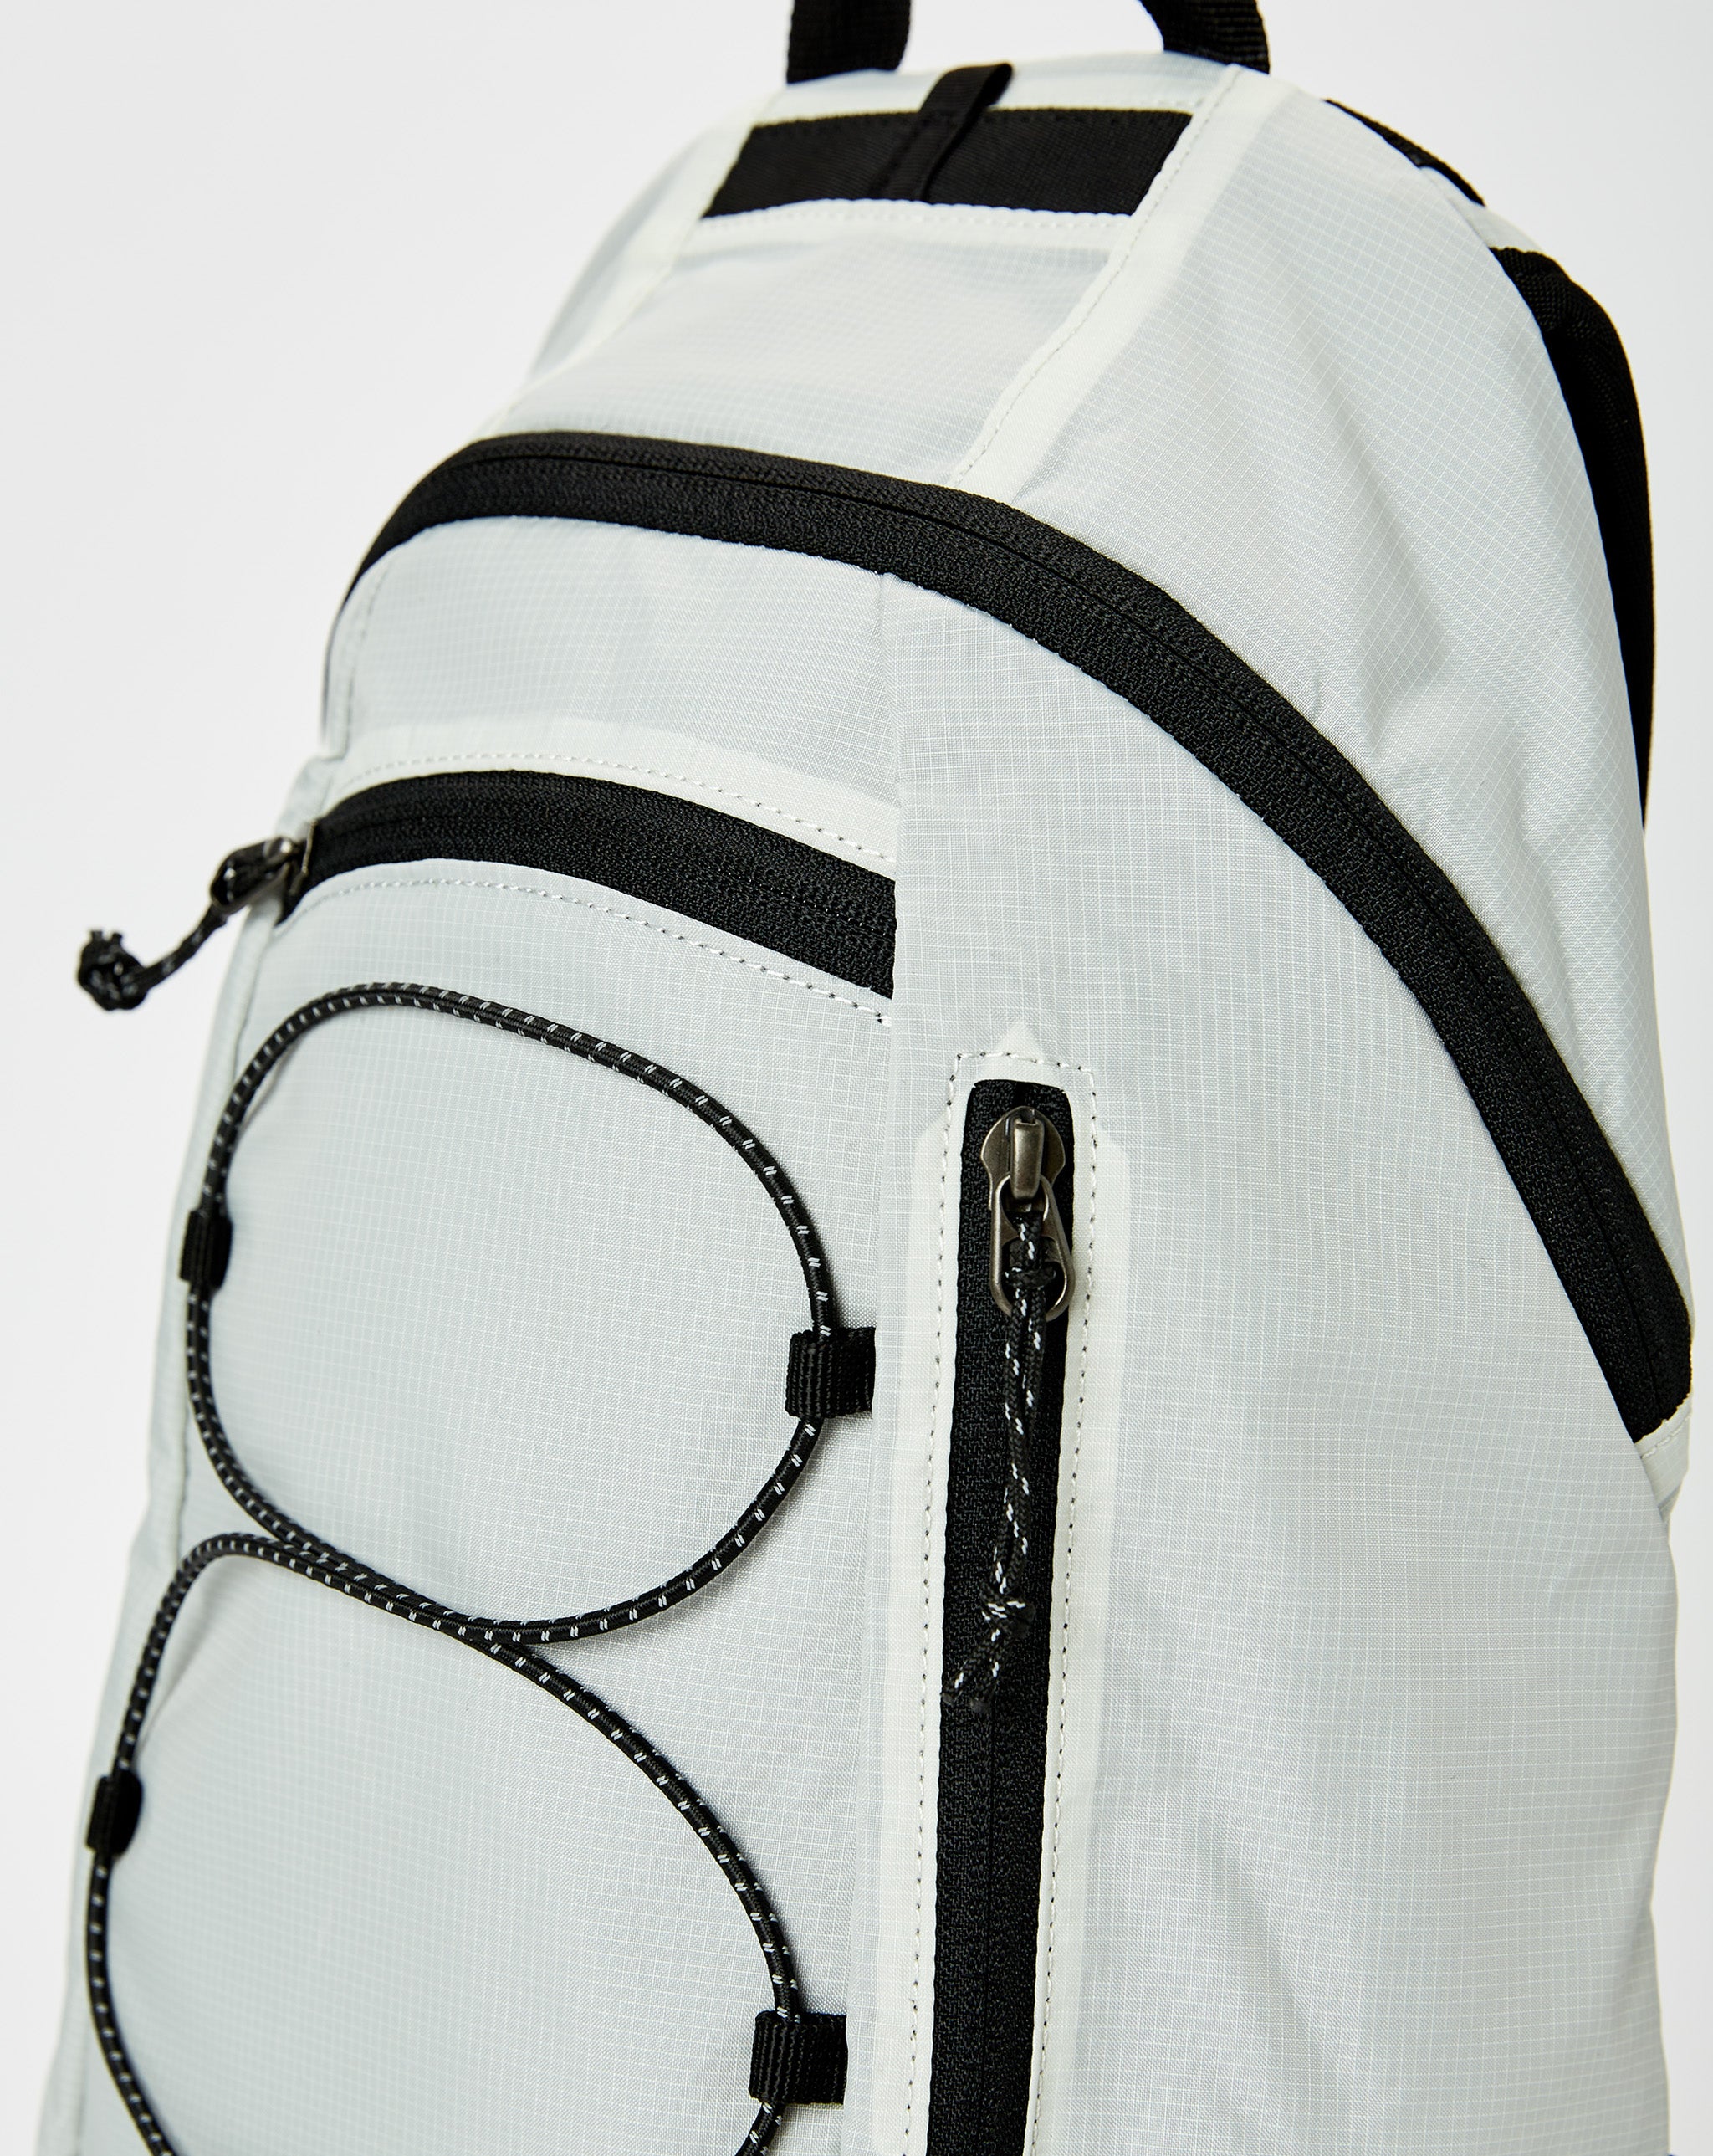 thisisneverthat Traveler FT 15 Backpack  - Cheap Urlfreeze Jordan outlet